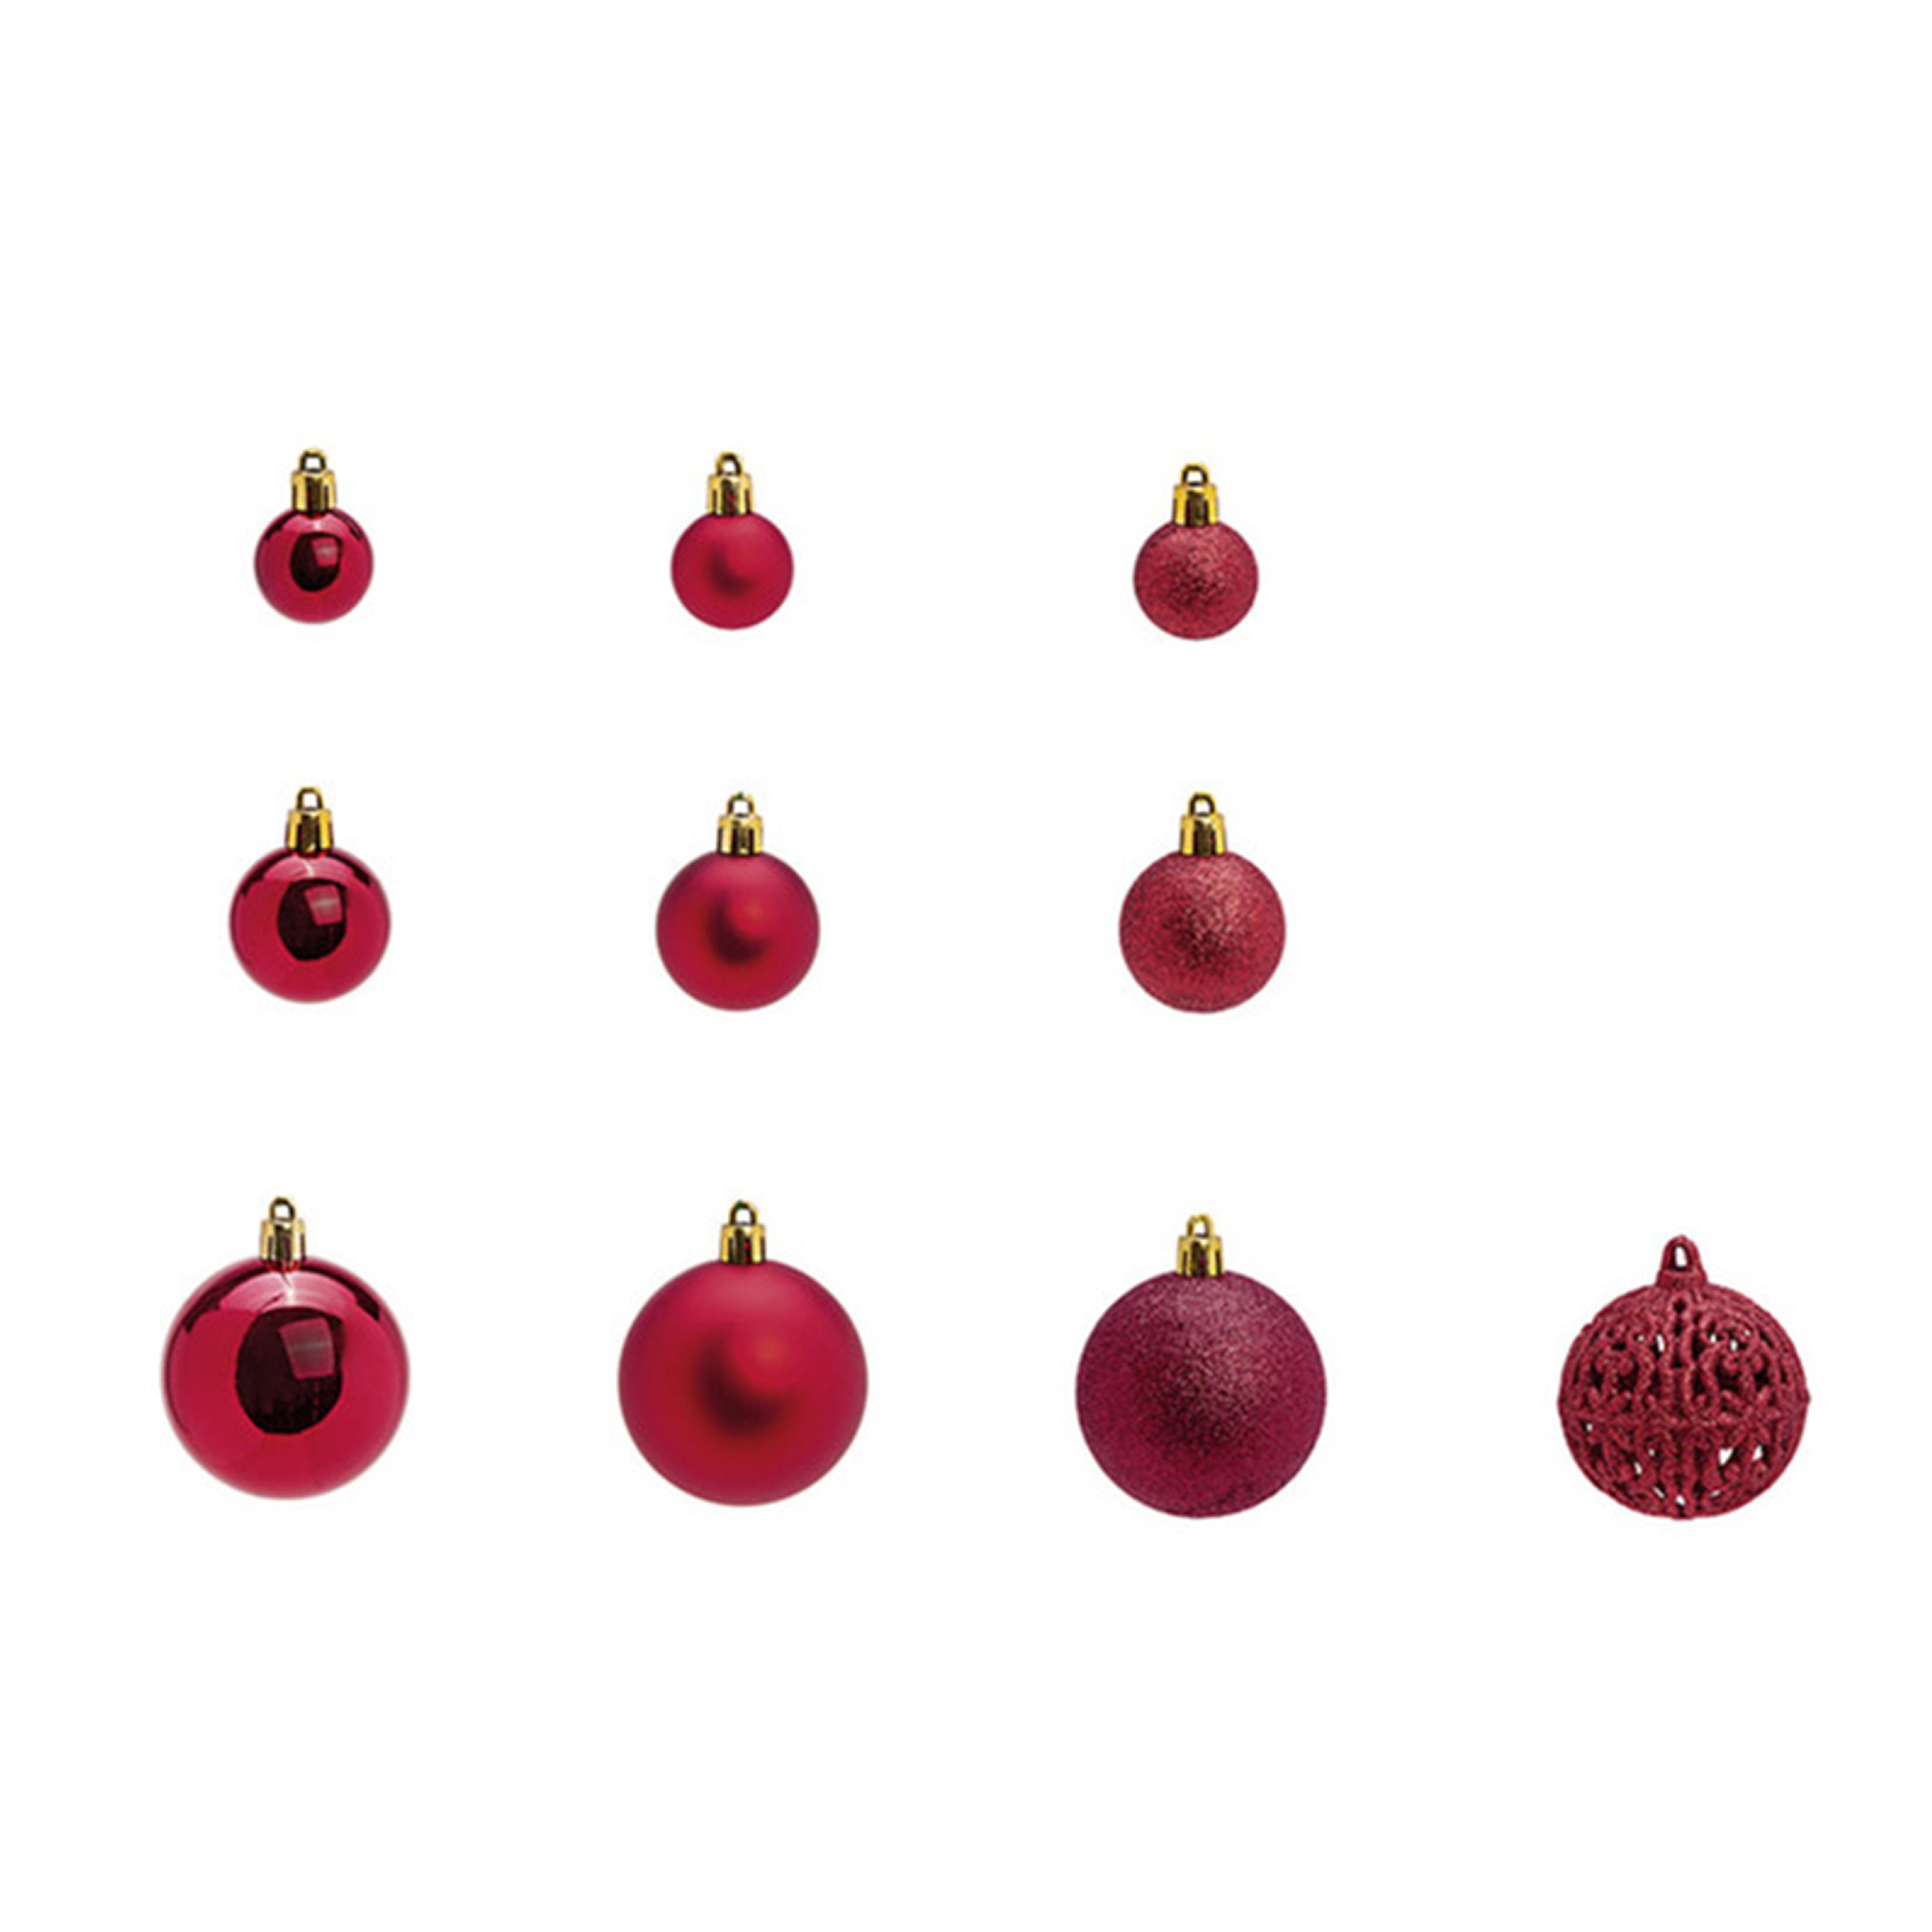 Kerstballen -set 100x st bordeaux rood 3,4,6 cm kunststof